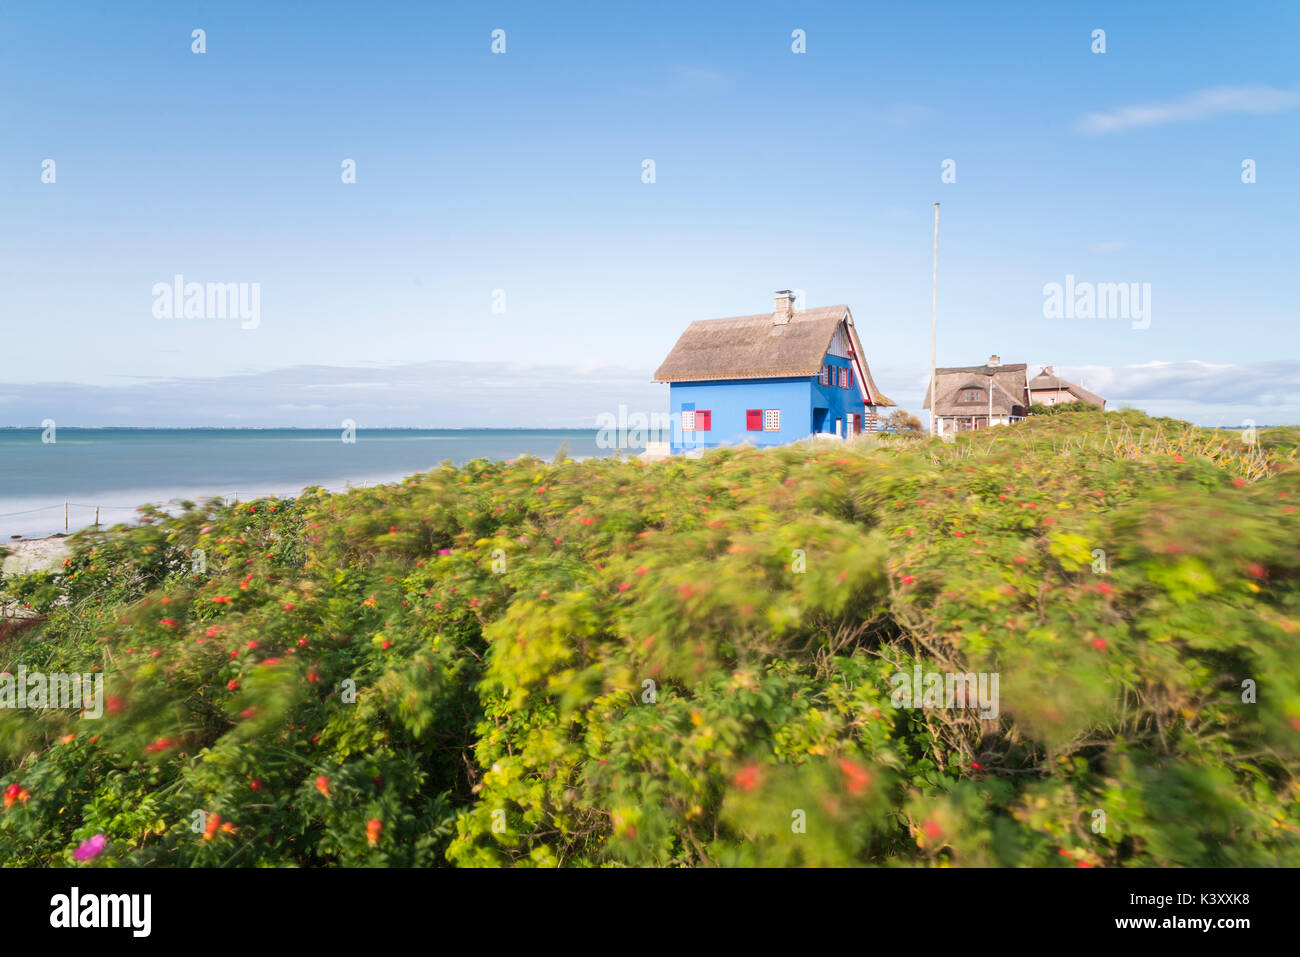 Storica spiaggia blu casa con tetto di paglia e cane cespugli di rose offuscata dal vento sulla penisola di graswarder a heiligenhafen, Germania Foto Stock